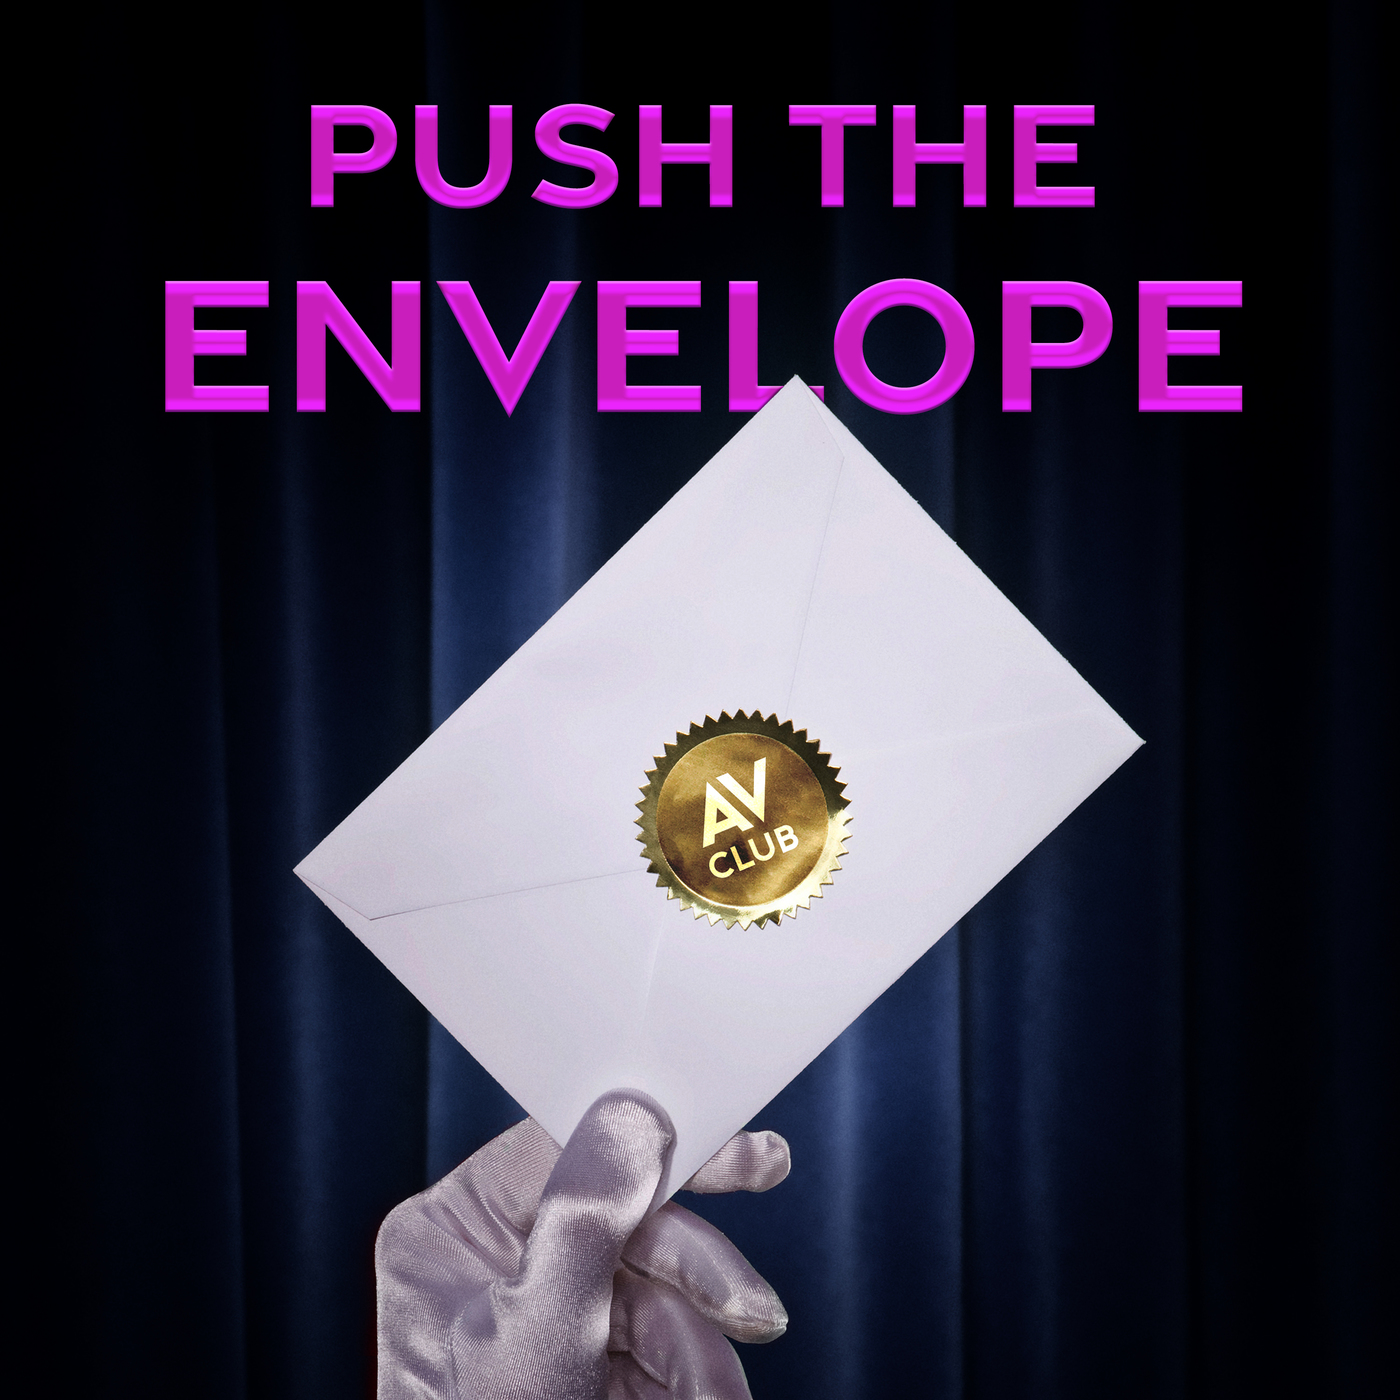 pushing the envelope